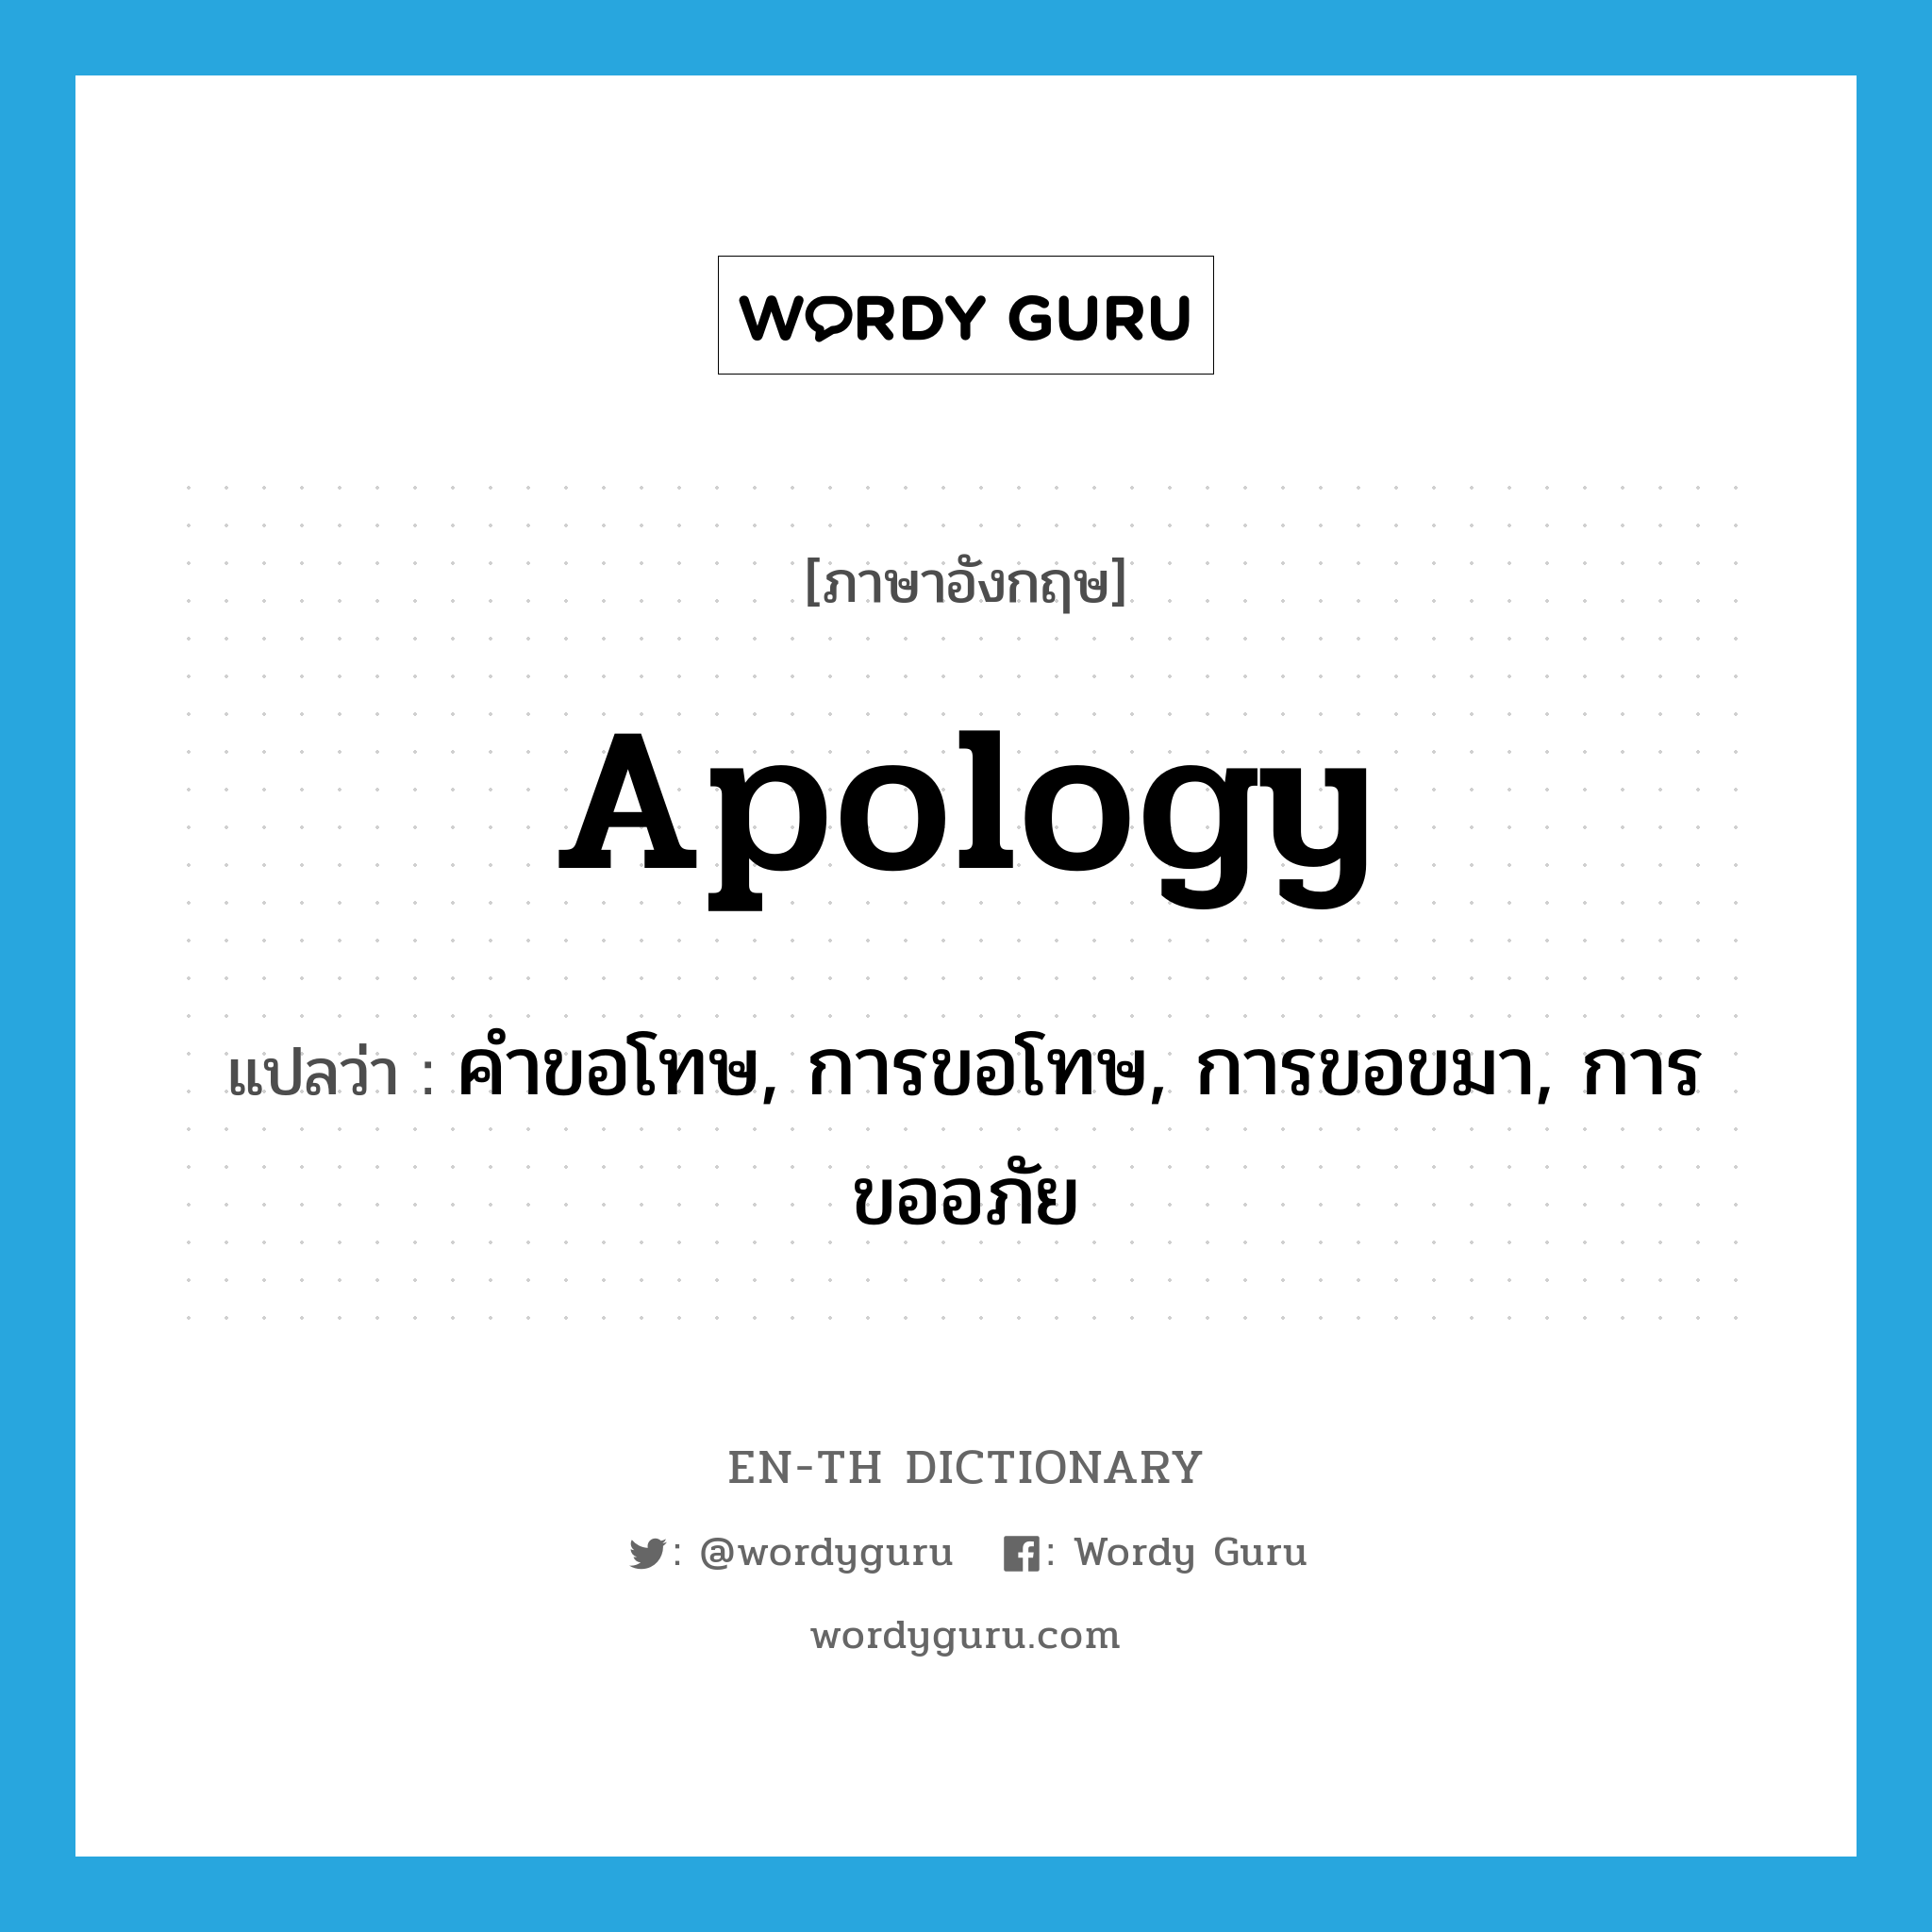 คำขอโทษ, การขอโทษ, การขอขมา, การขออภัย ภาษาอังกฤษ?, คำศัพท์ภาษาอังกฤษ คำขอโทษ, การขอโทษ, การขอขมา, การขออภัย แปลว่า apology ประเภท N หมวด N